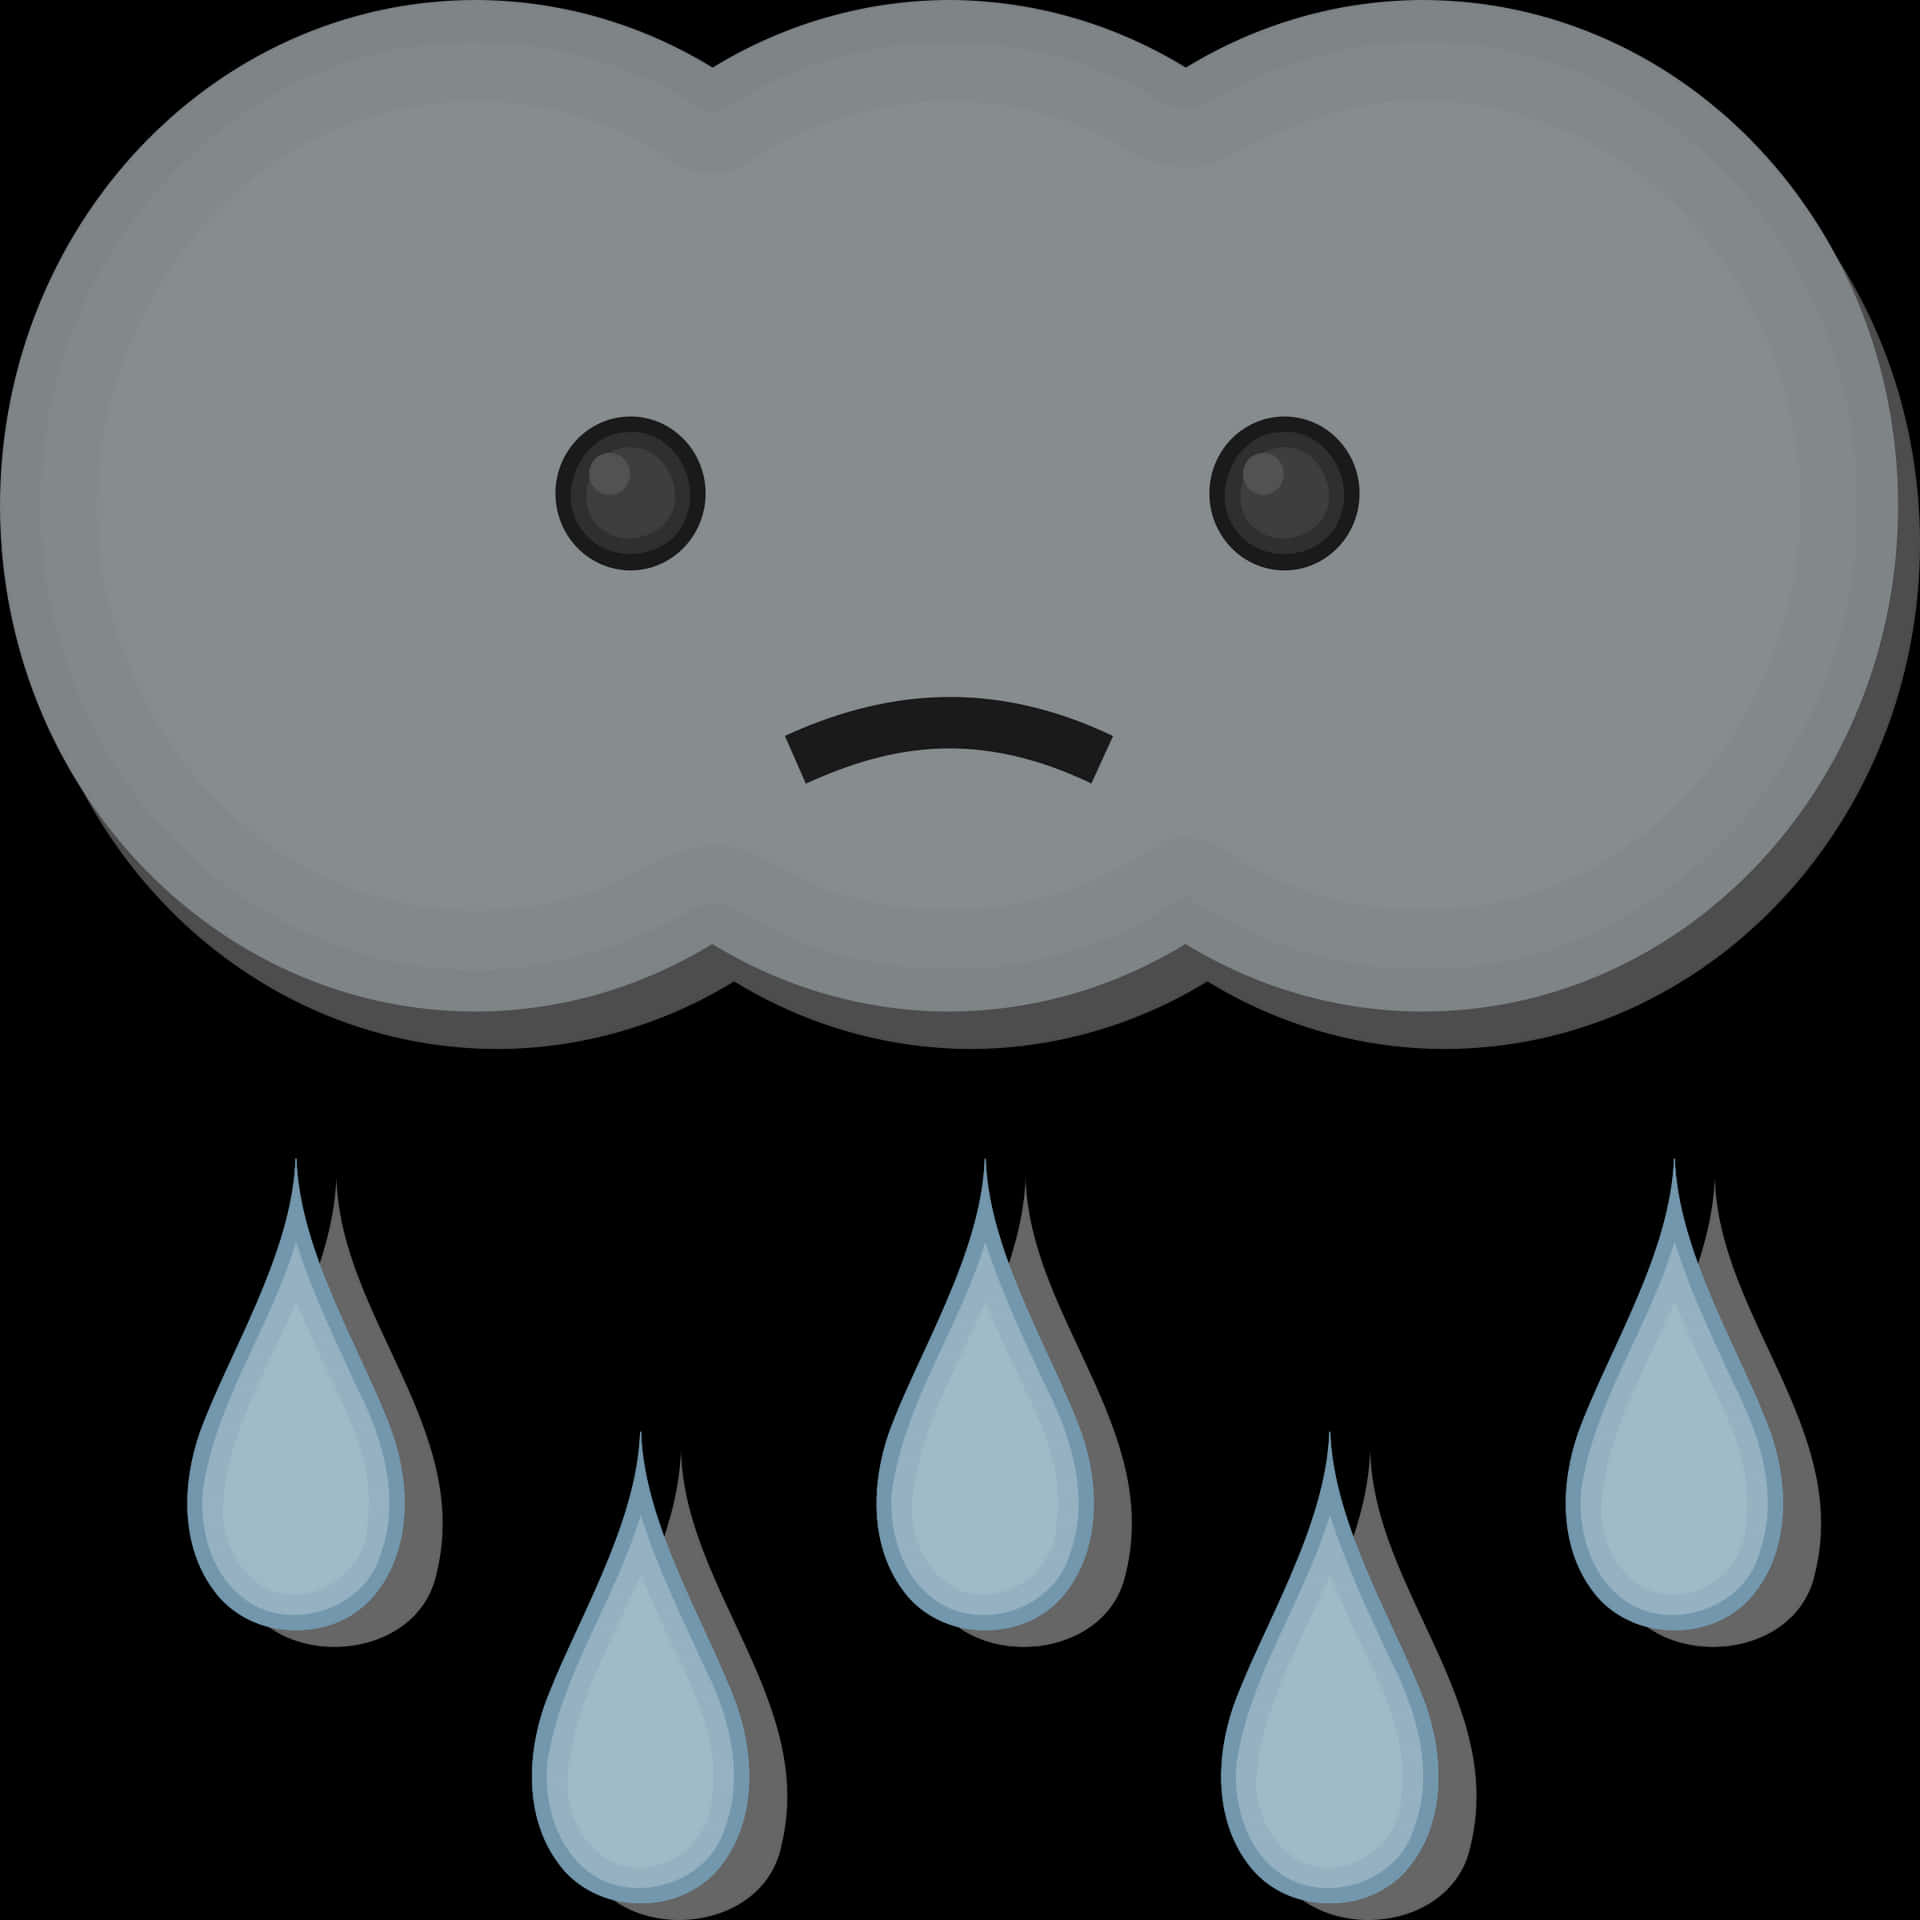 Sad Rain Cloud Cartoon PNG image